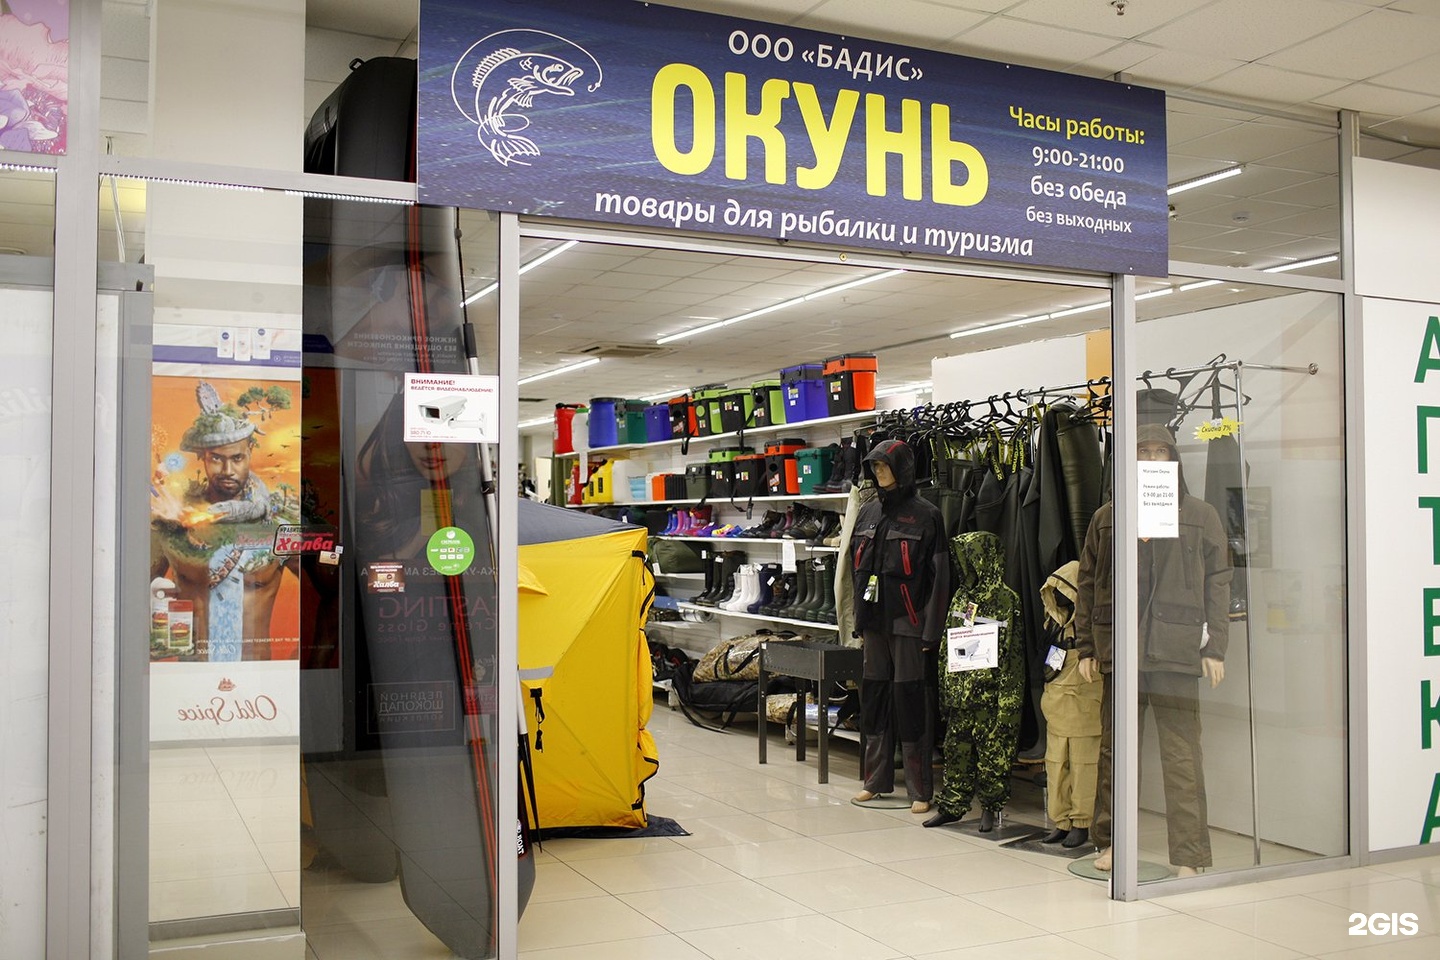 Бадис новосибирск интернет магазин